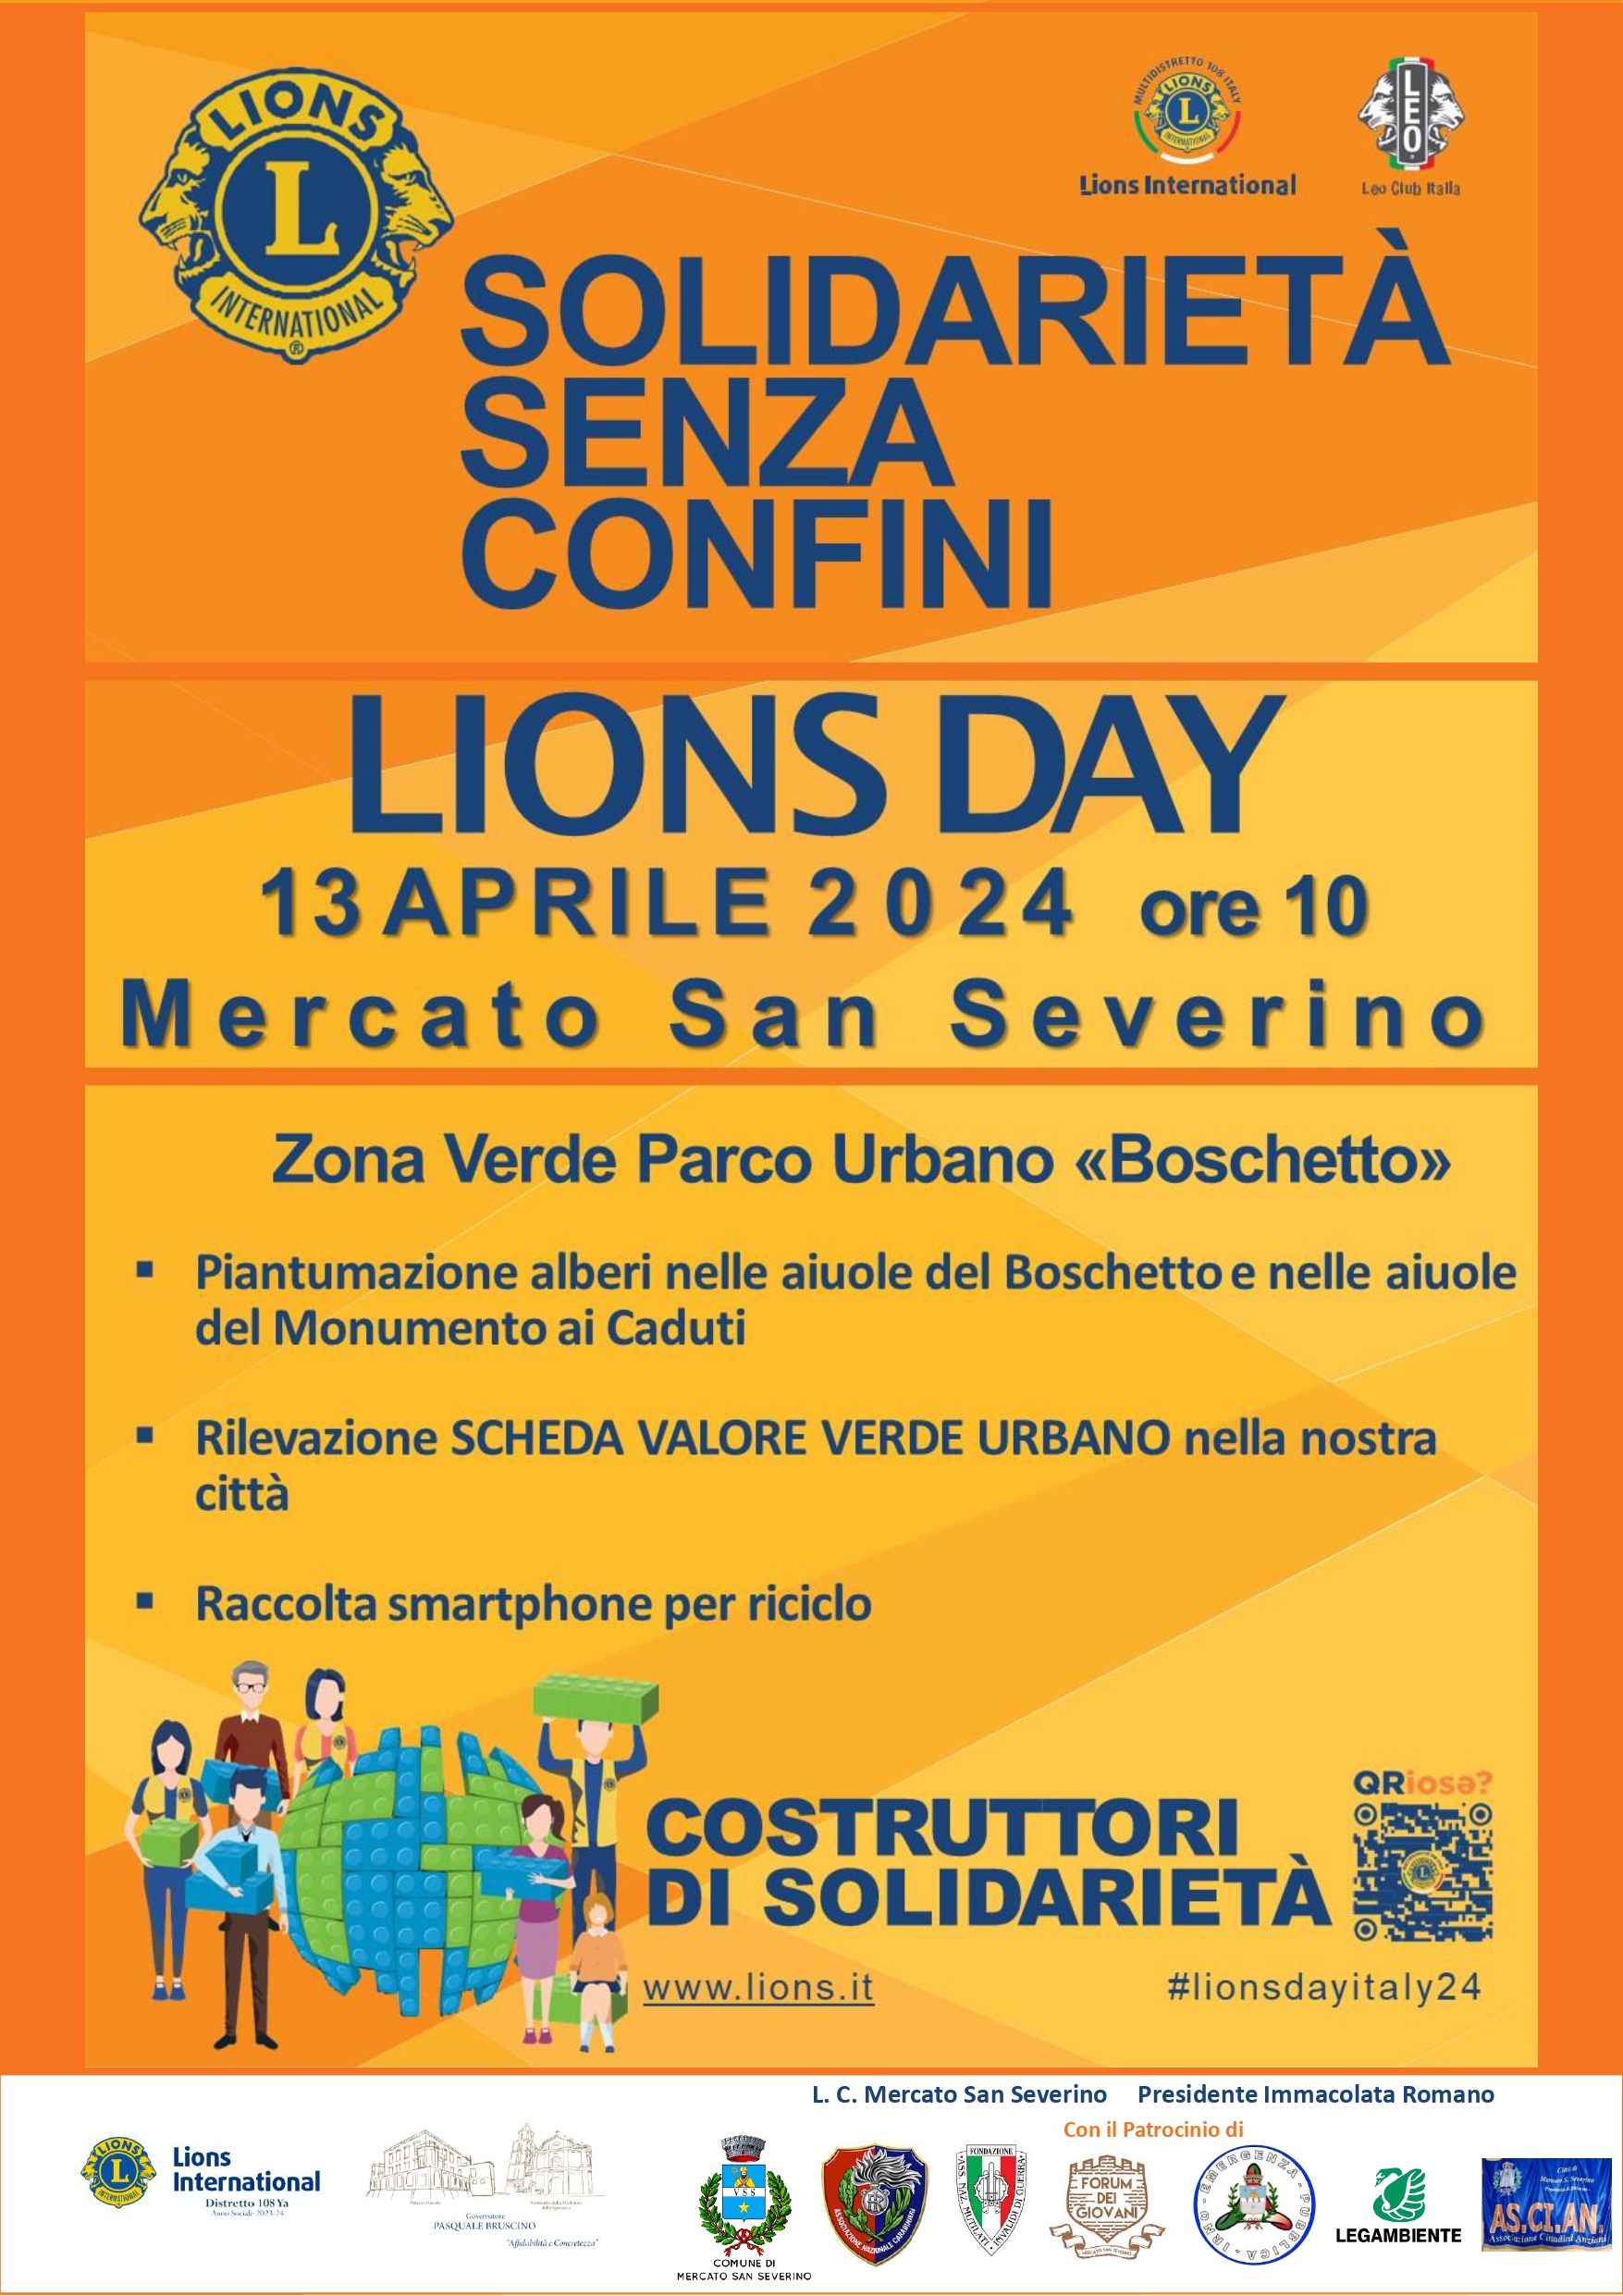 Mercato San Severino: “Lions Day” a “Boschetto” 